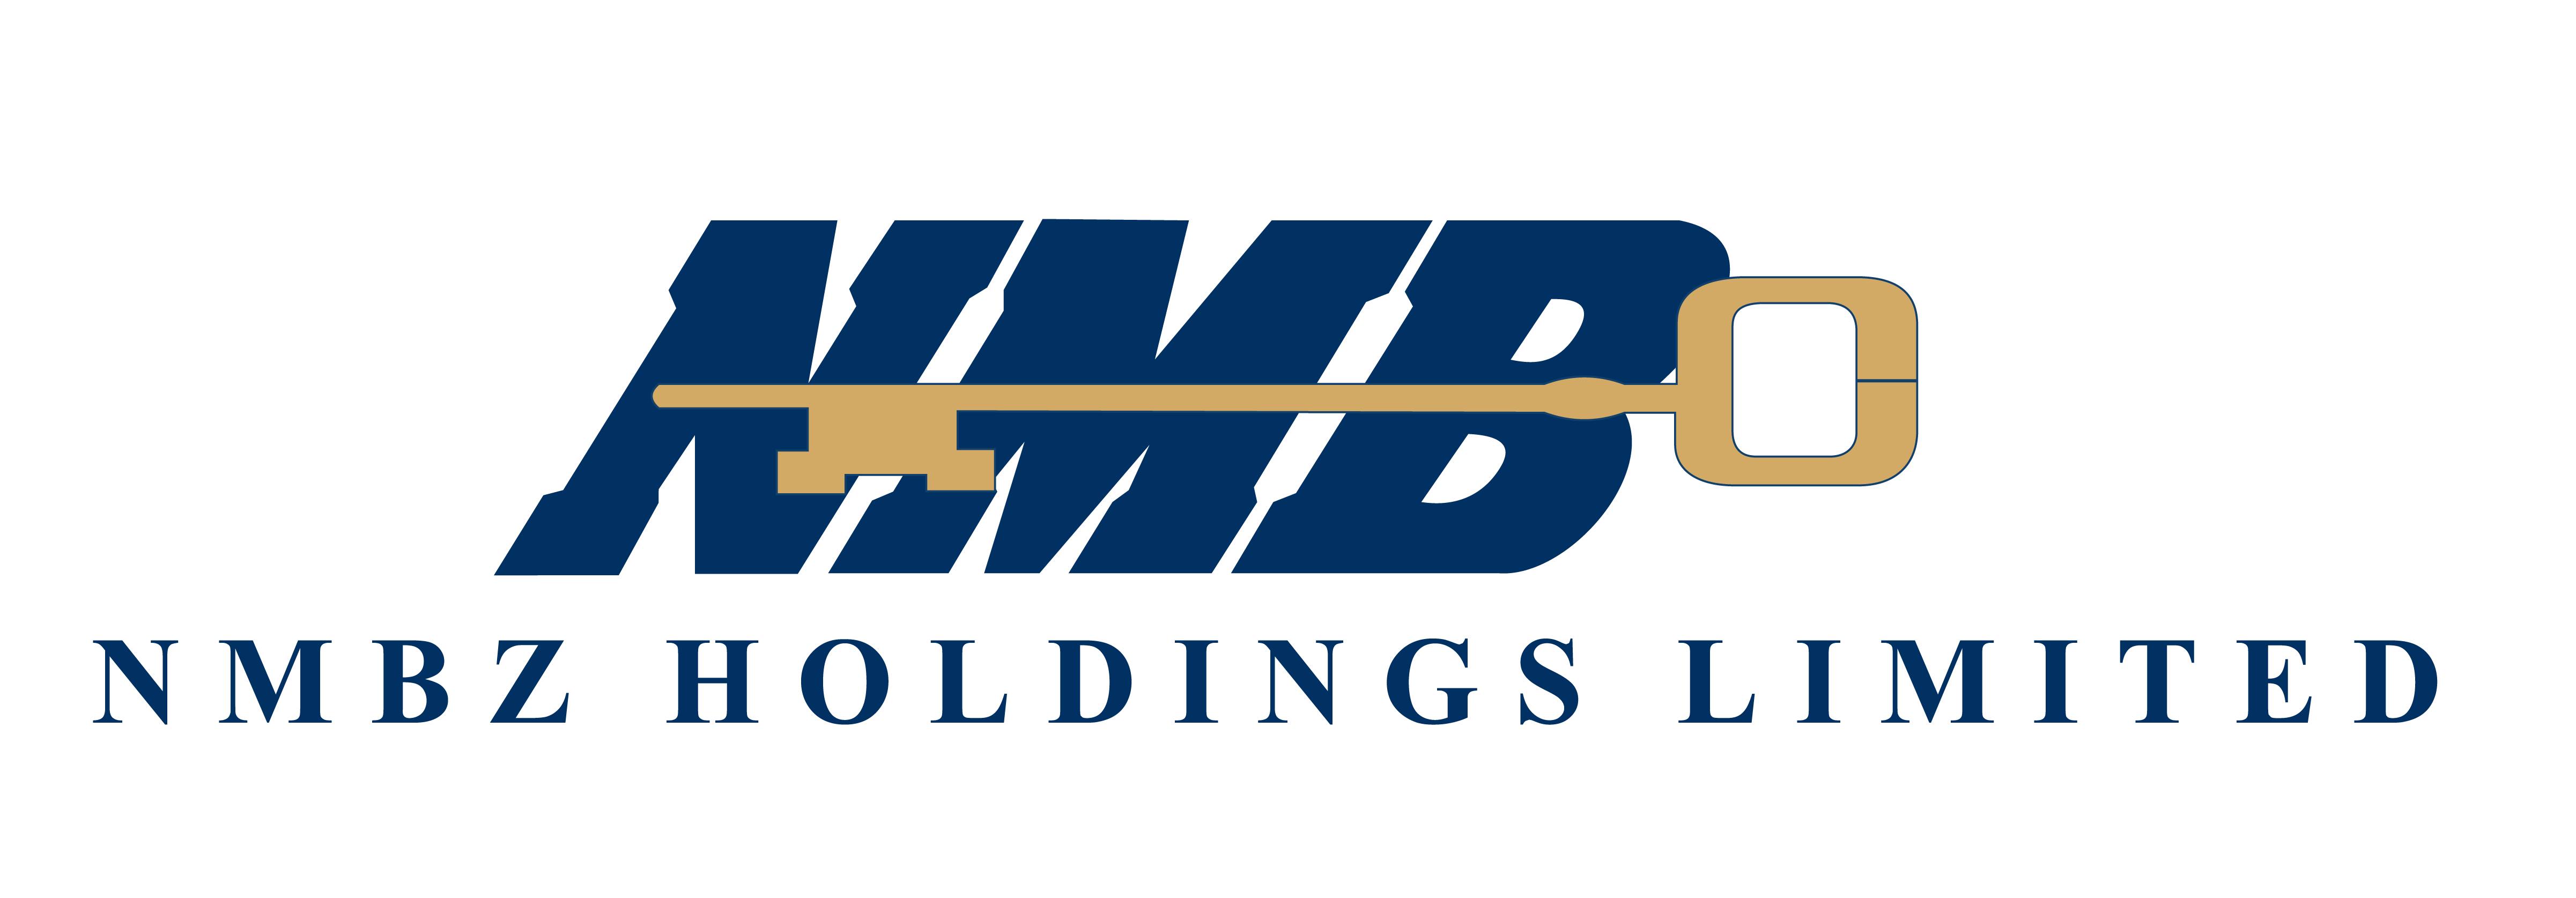 NMB Logo - NMB Bank - Pindula